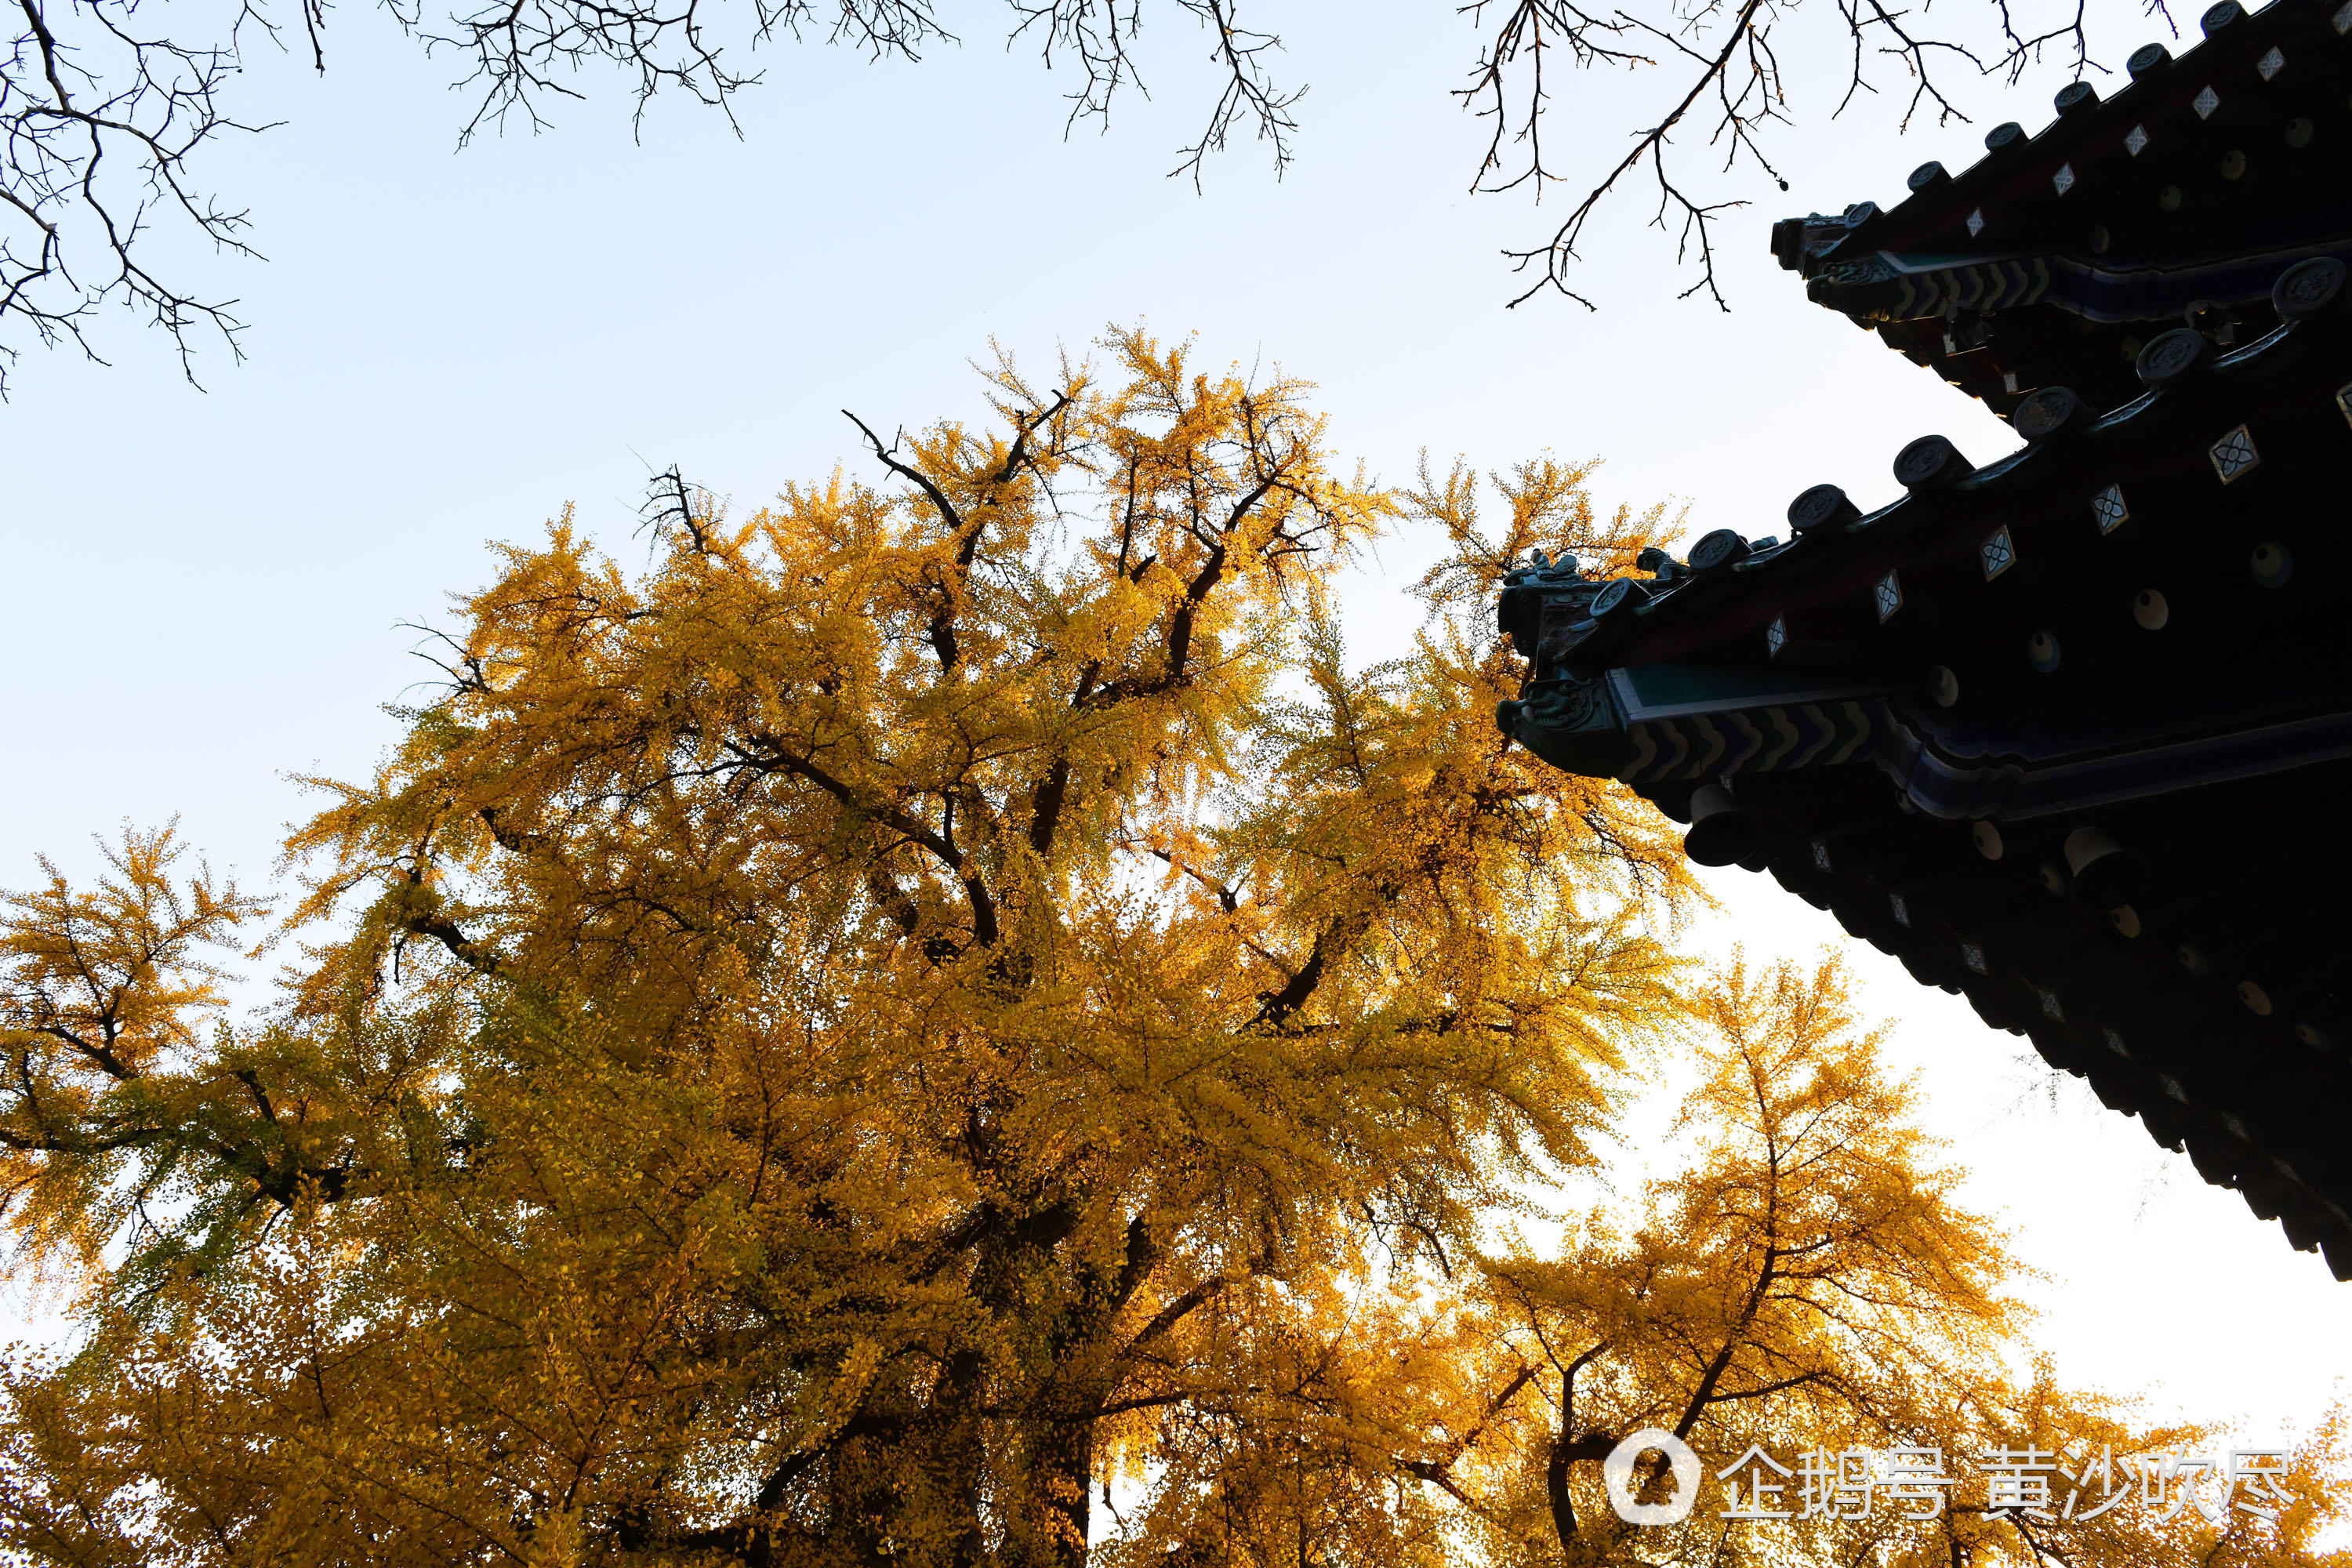 【美景】少林寺内1500岁银杏树"黄发飘零"美煞游人